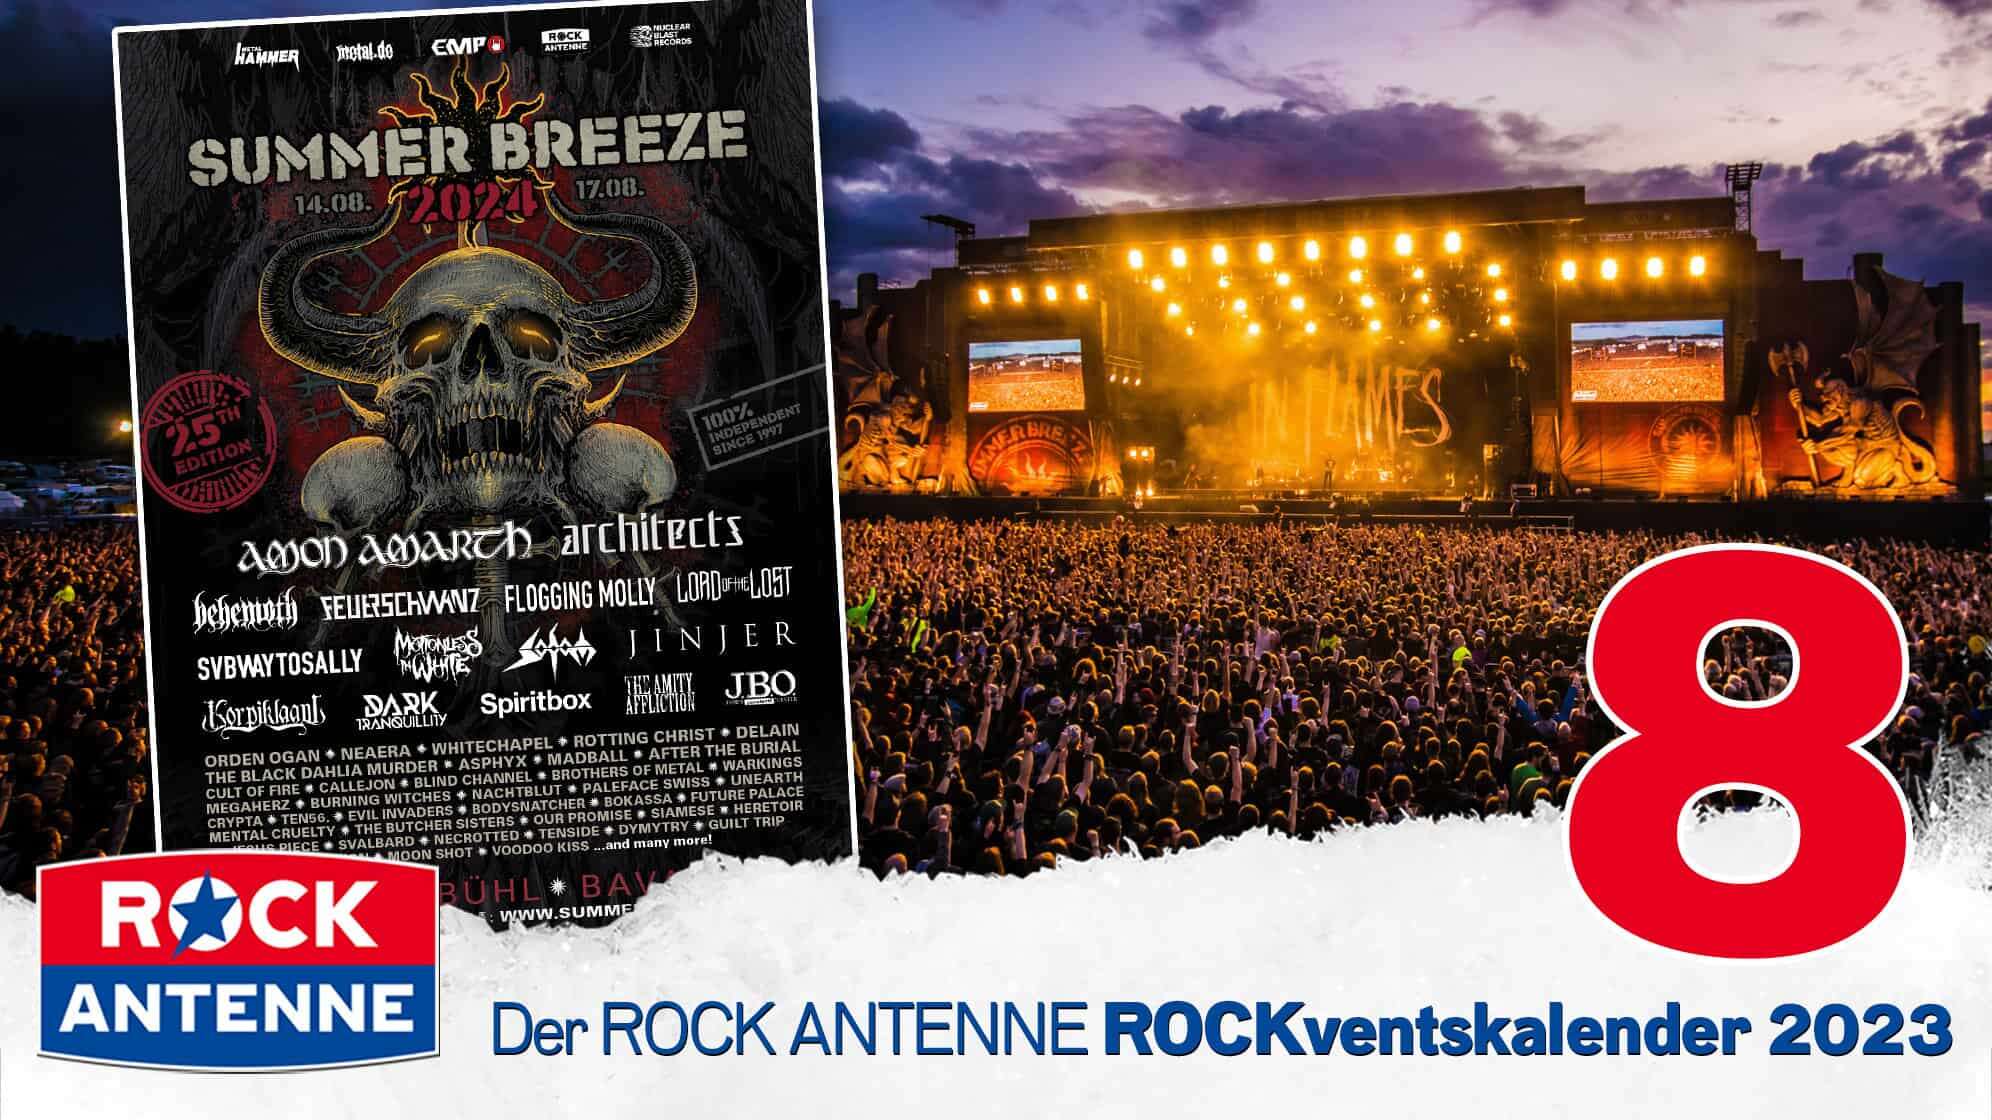 ROCK ANTENNE ROCKventskalender Türchen 8: 2 VIP Tickets für das Summer Breeze Open Air Metalfestival 2024